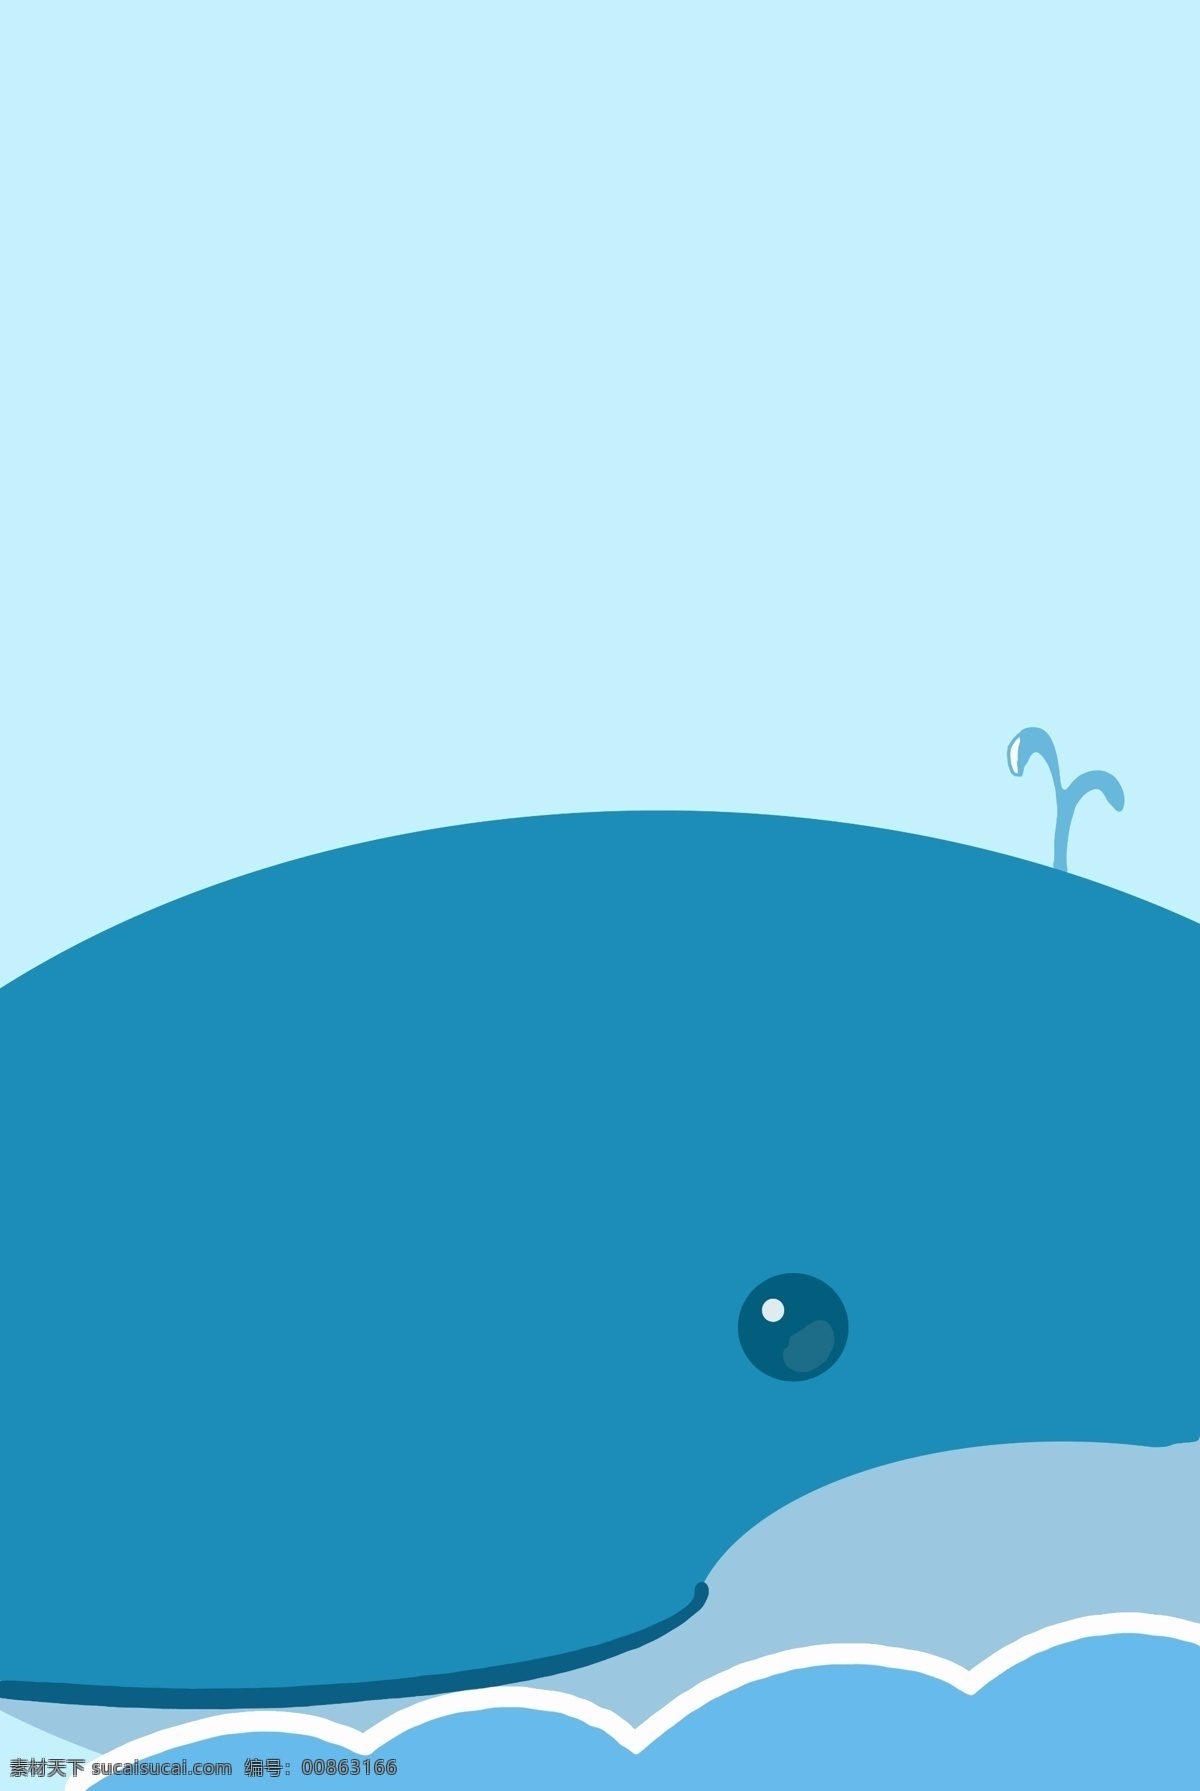 简约 手绘 卡通 鲸鱼 浮出 海面 海报 背景 波浪 小清新 蓝色 促销 宣传 可爱